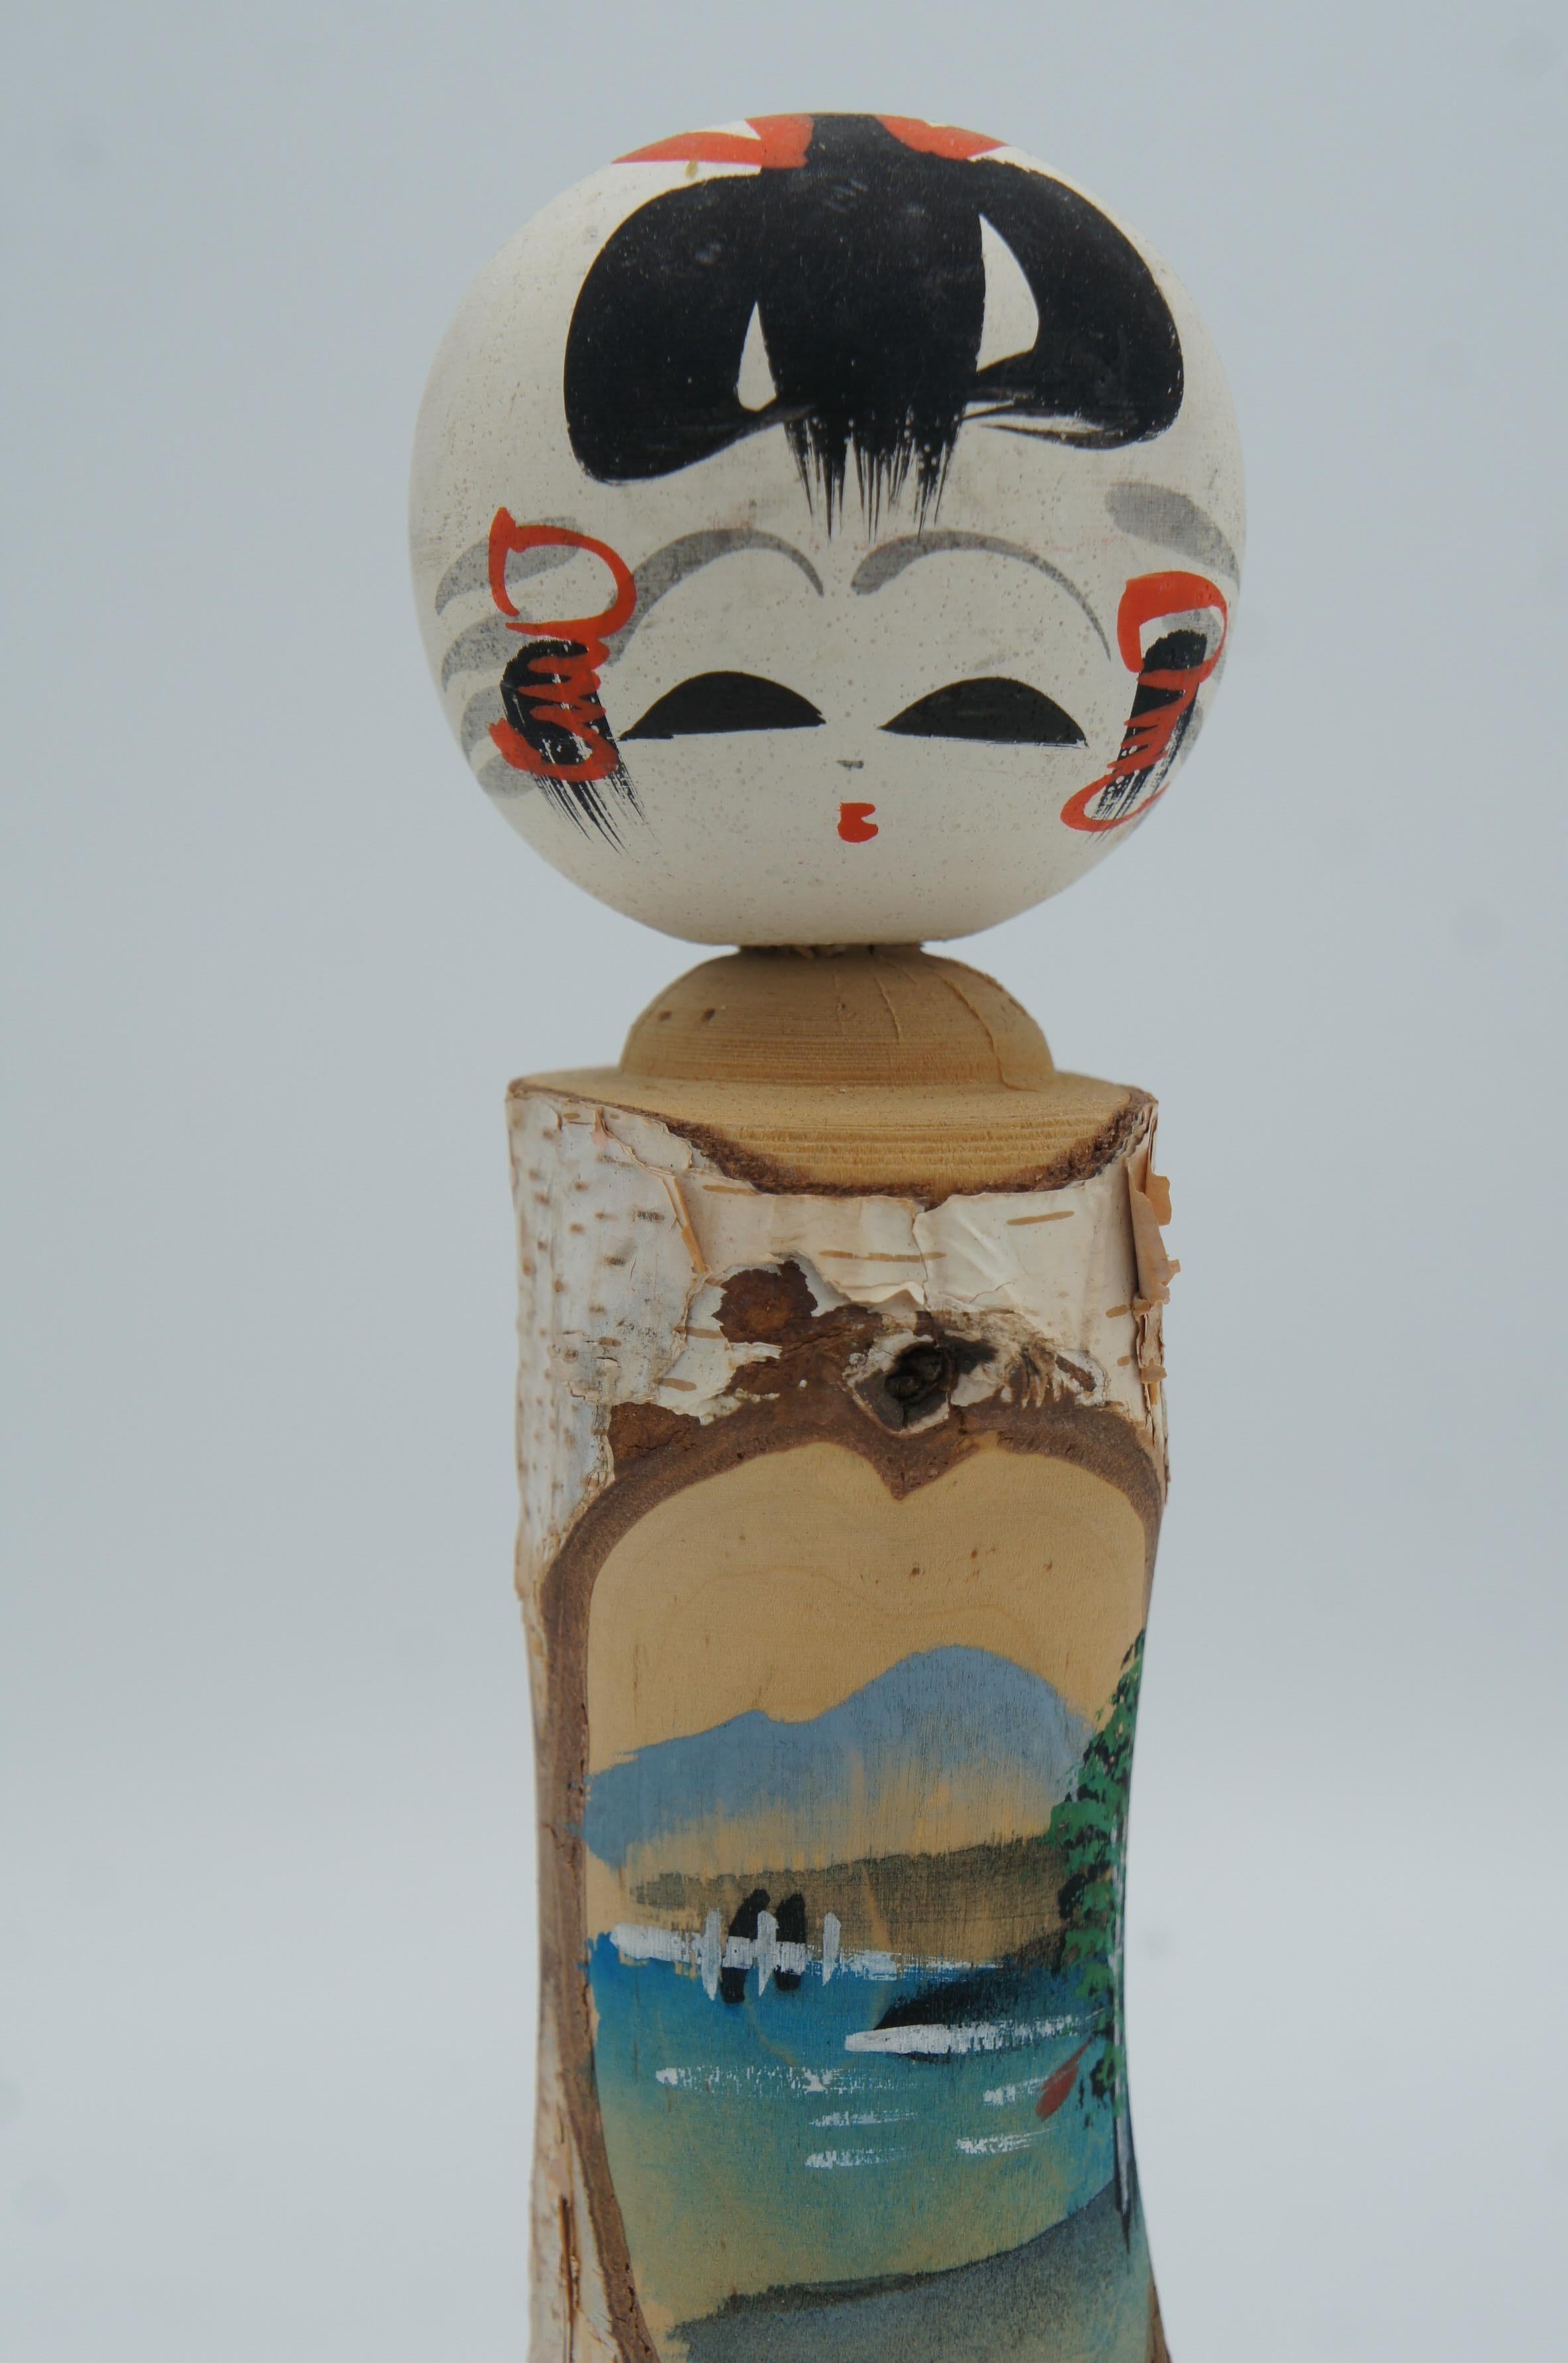 Dies ist eine Kokeshi-Puppe, die aus einer weißen Birke hergestellt wurde. Sie wurde in den 1980er Jahren in der Showa-Ära hergestellt. Dieses Kokeshi ist mit neuem Stil. 

Abmessungen: H21 x 6,5 x 6,5 cm

Betula platyphylla, die asiatische